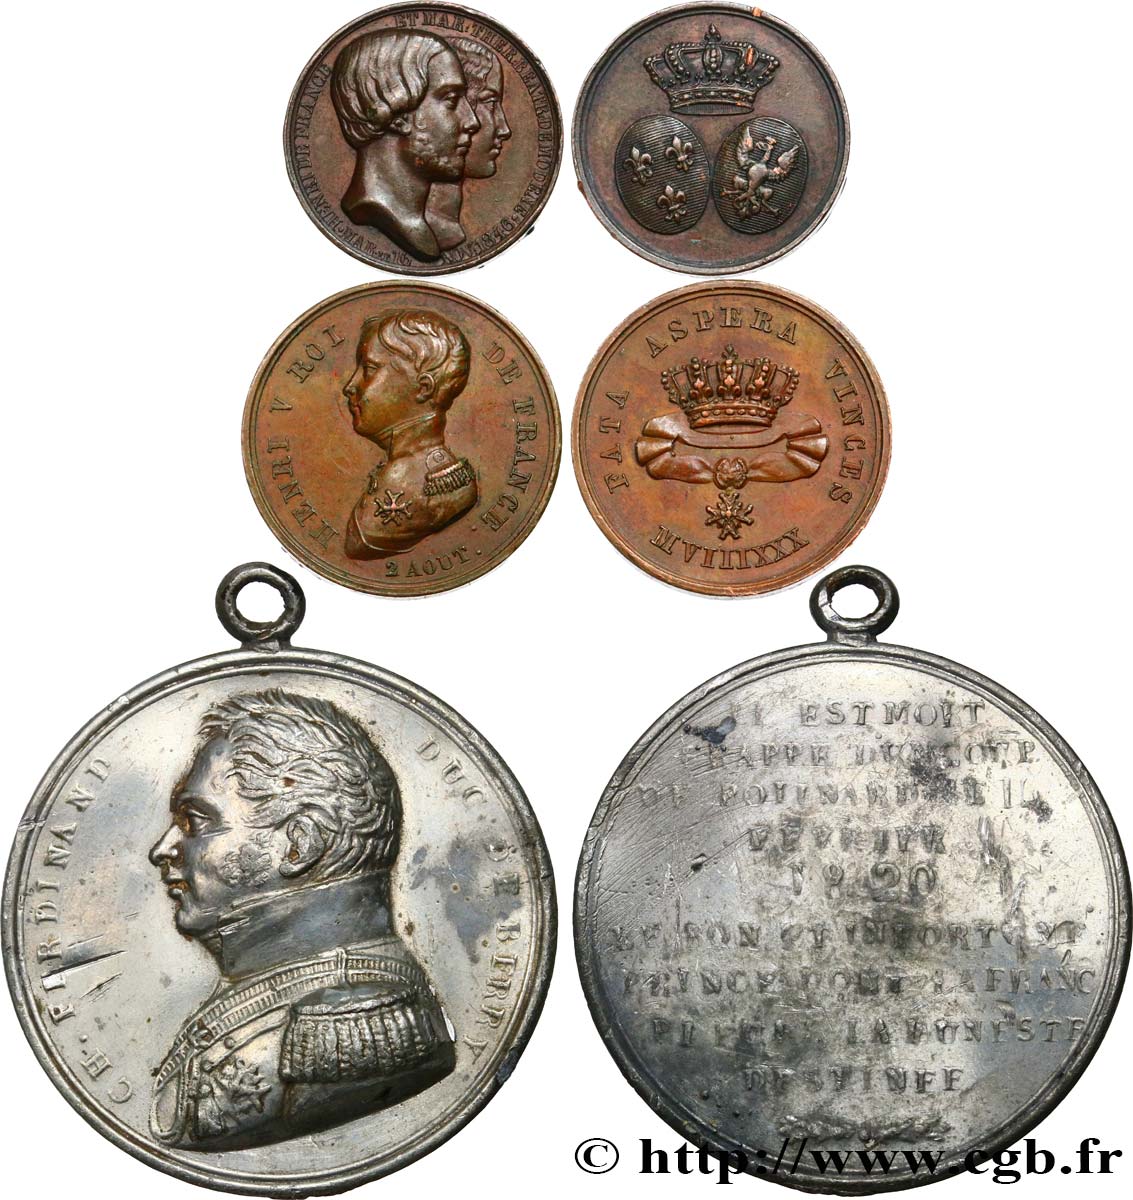 HENRI V COMTE DE CHAMBORD Lot de 3 médailles relatives à la vie d’Henri V, comte de Chambord MBC